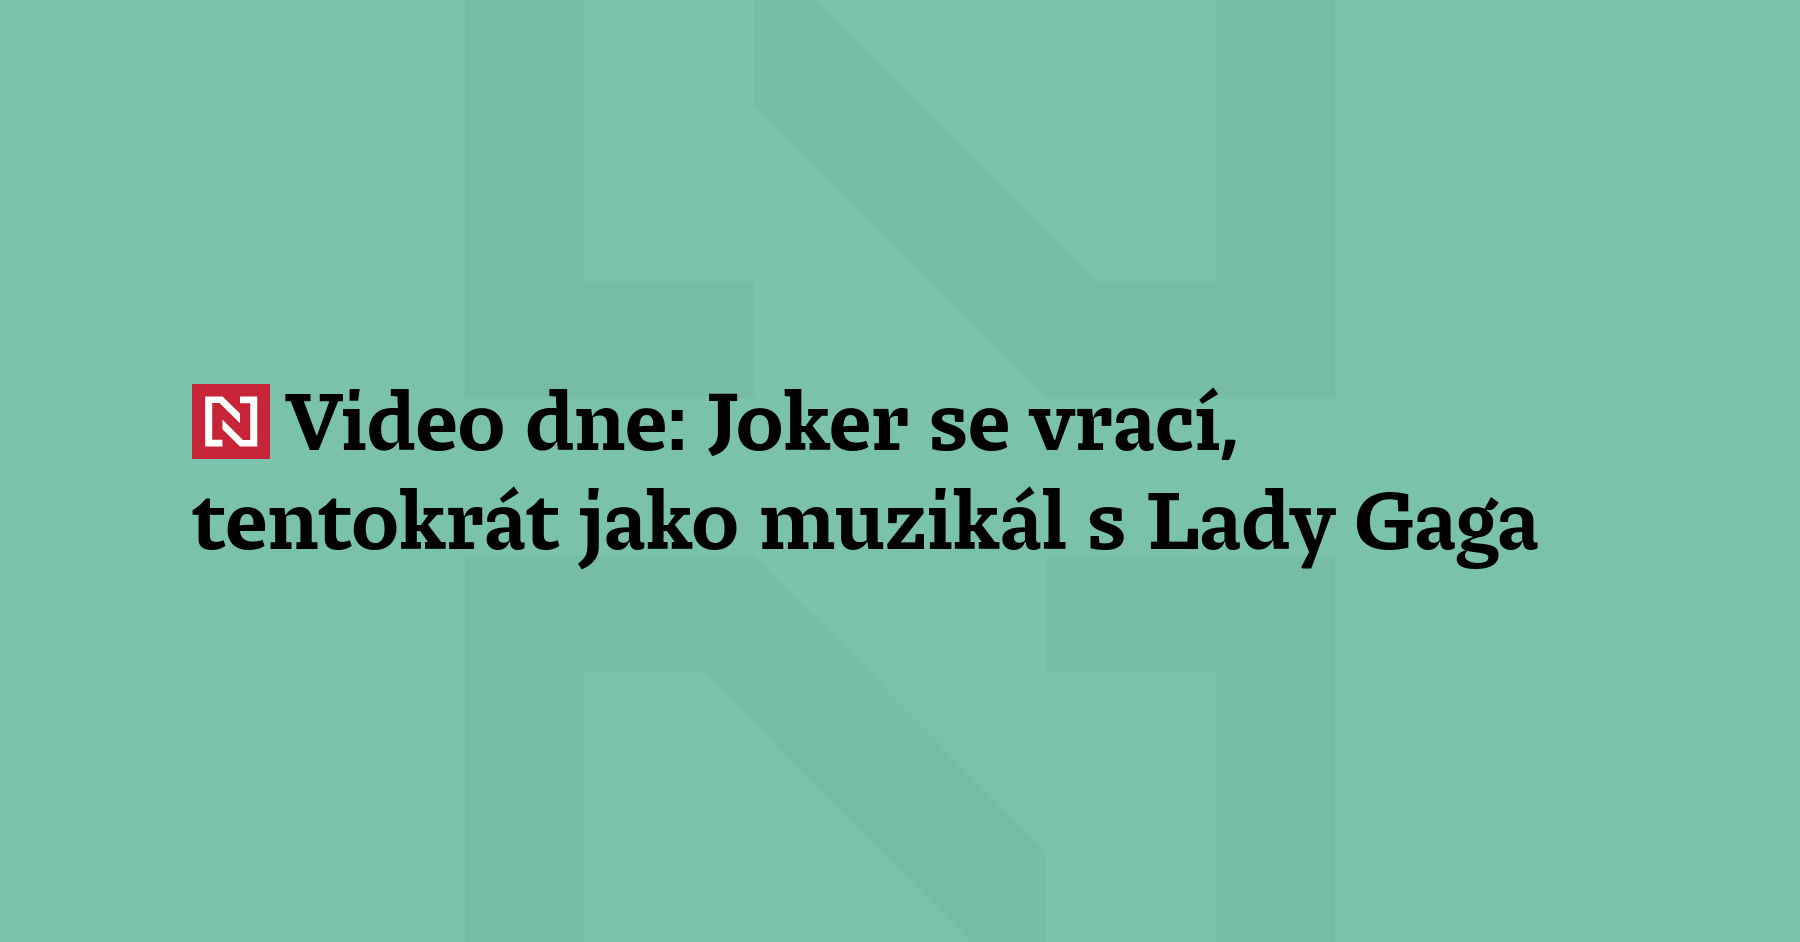 Joker revient, cette fois en comédie musicale avec Lady Gaga